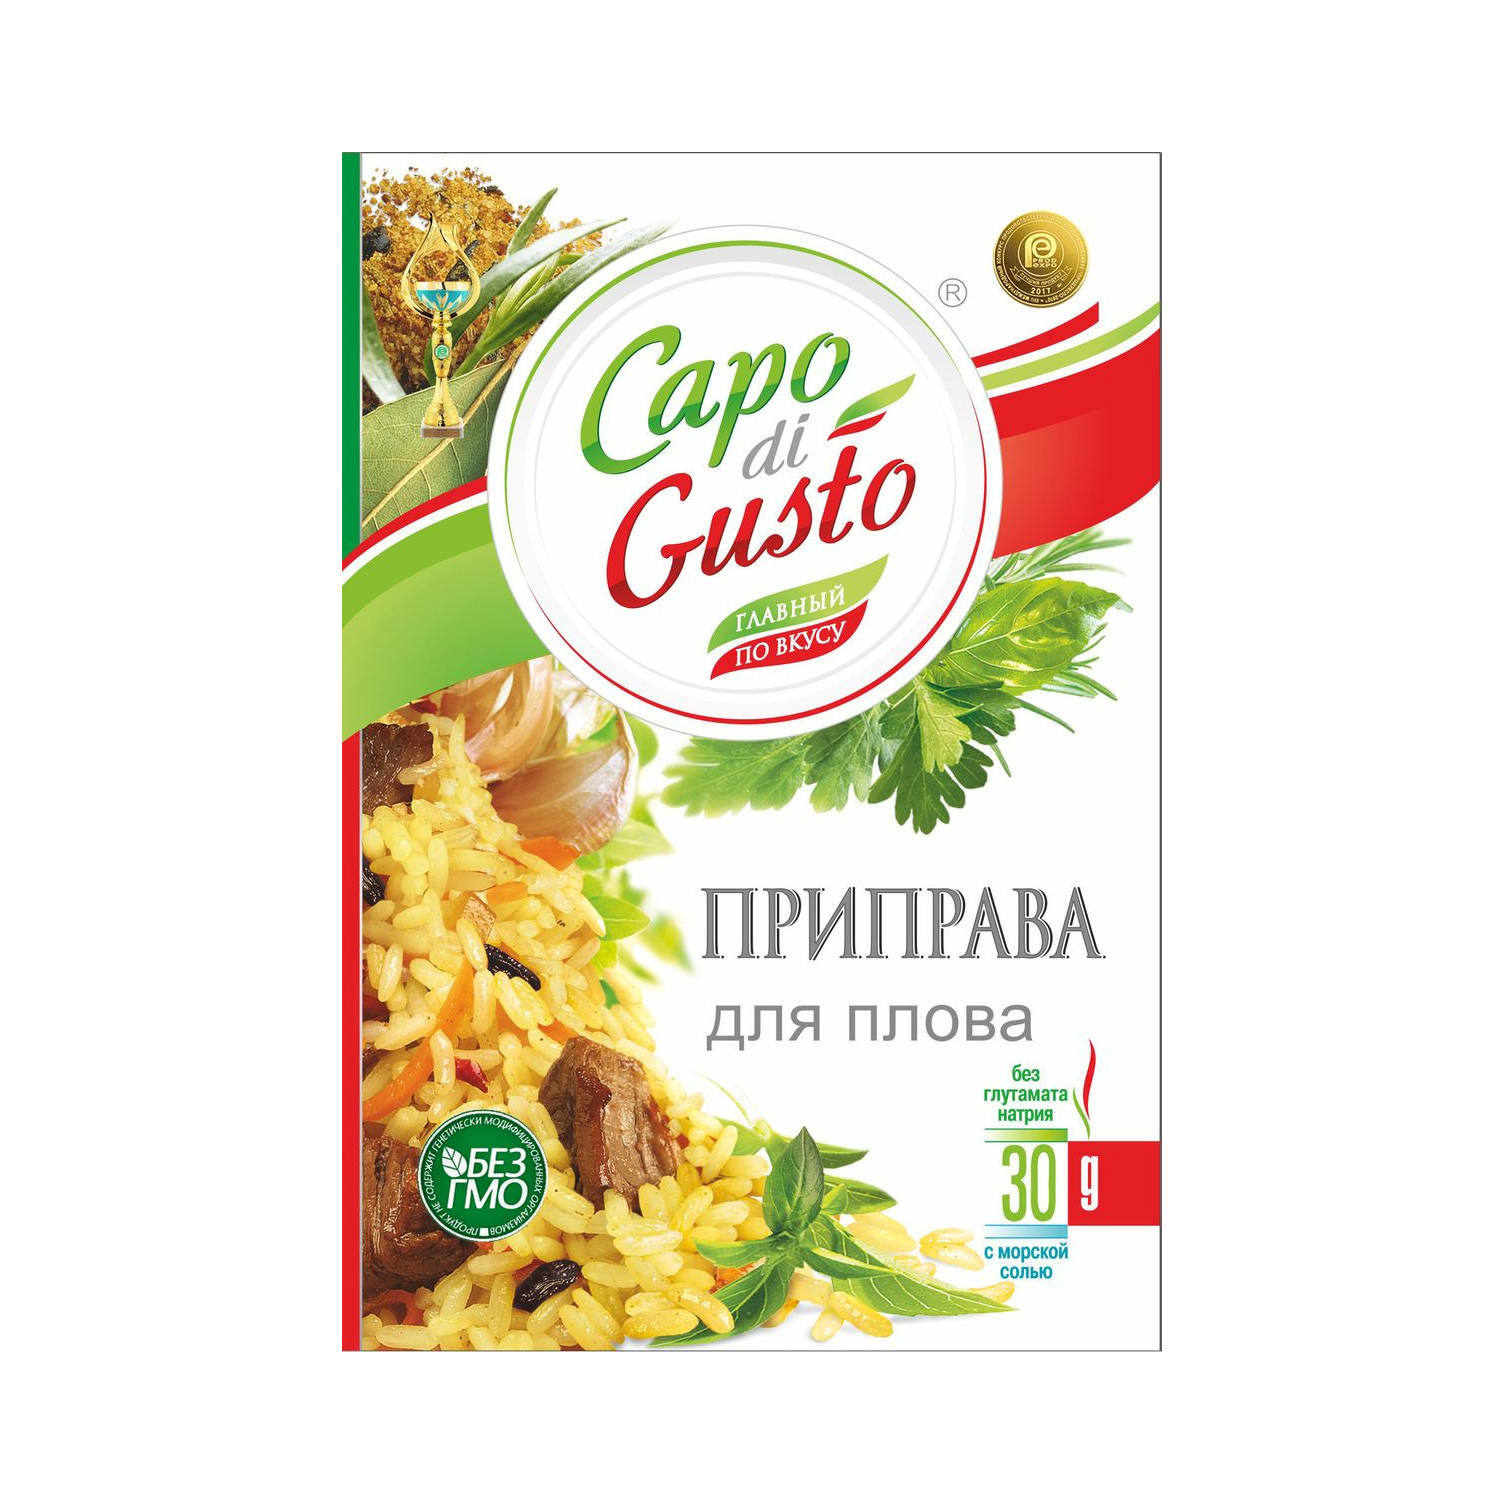 Приправа Capo di Gusto для плова 30 г приправа capo di gusto для мяса 30 г